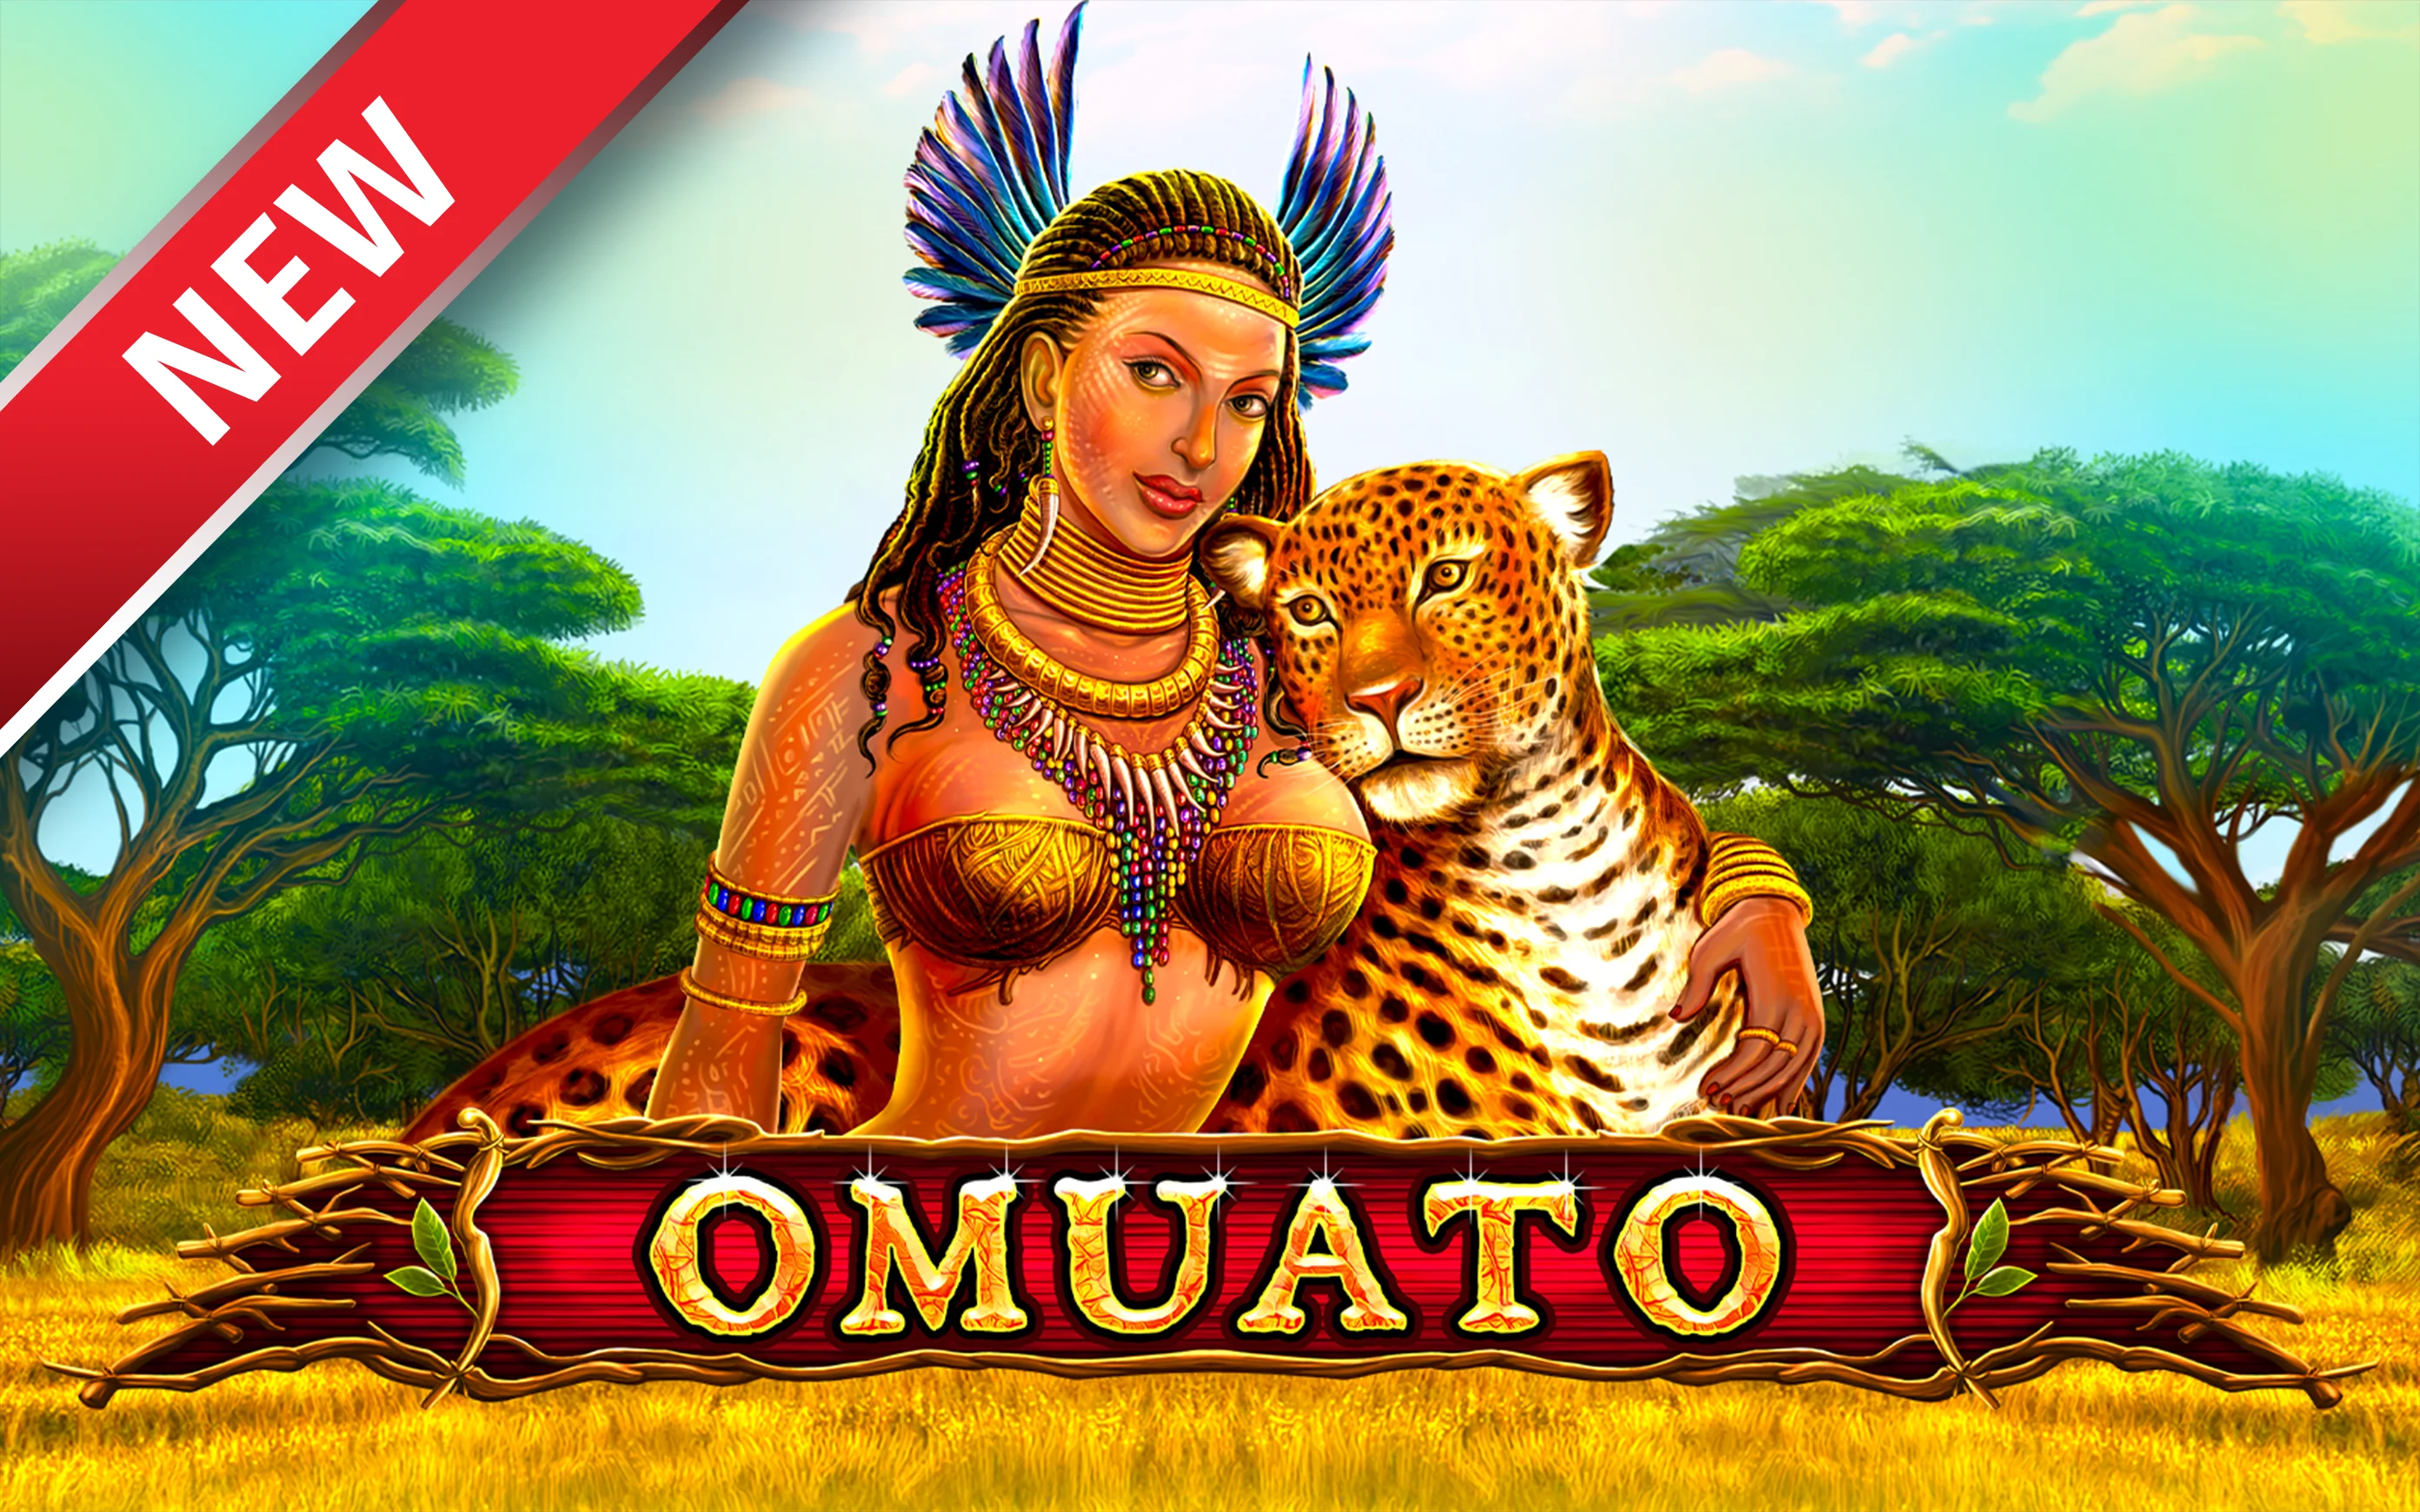 Play Omuato on Starcasino.be online casino